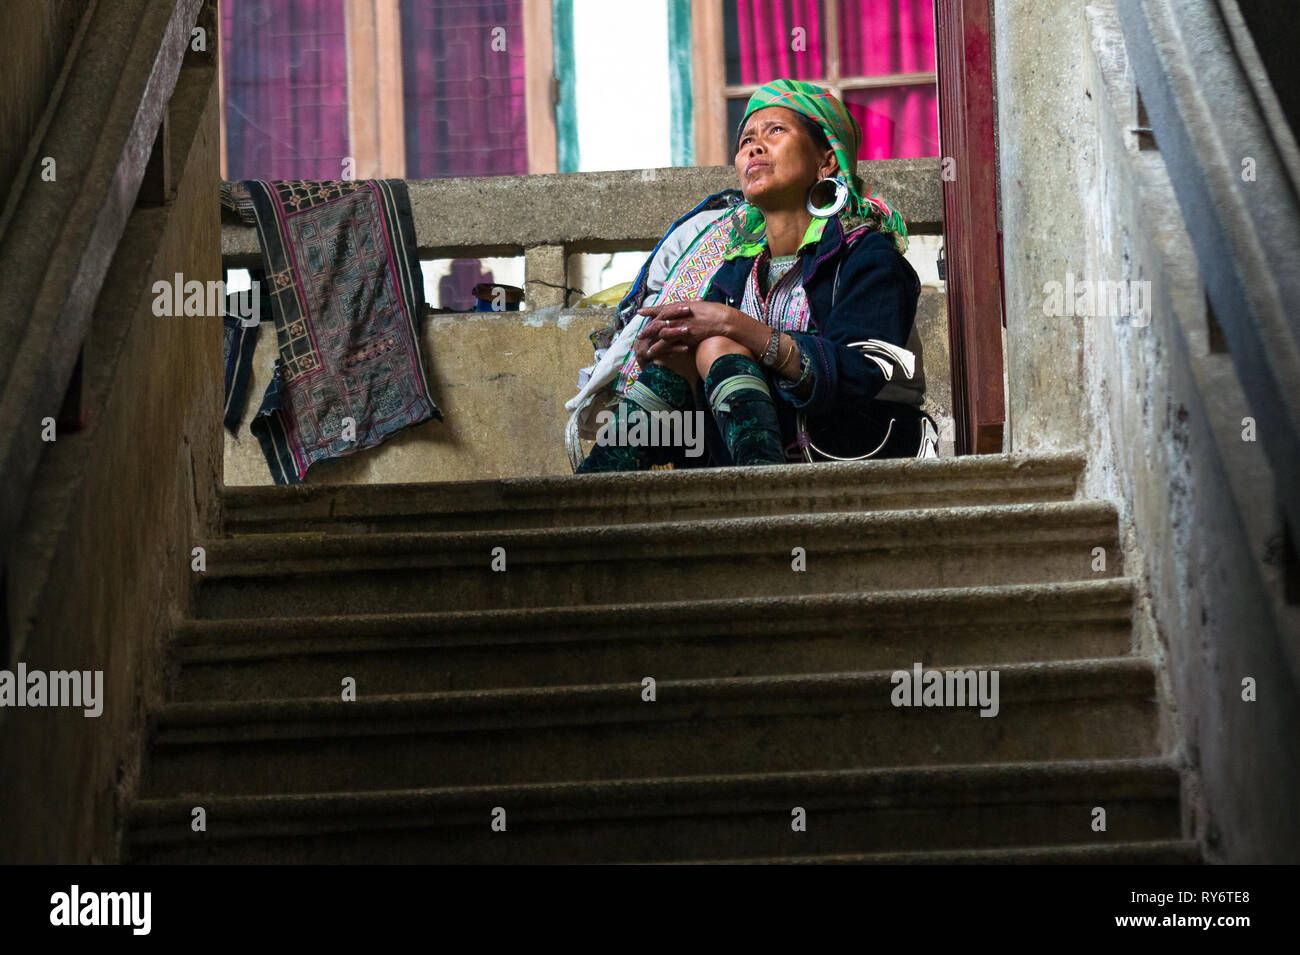 Femme Hmong grave dans de vieux escaliers - Lille, France Banque D'Images